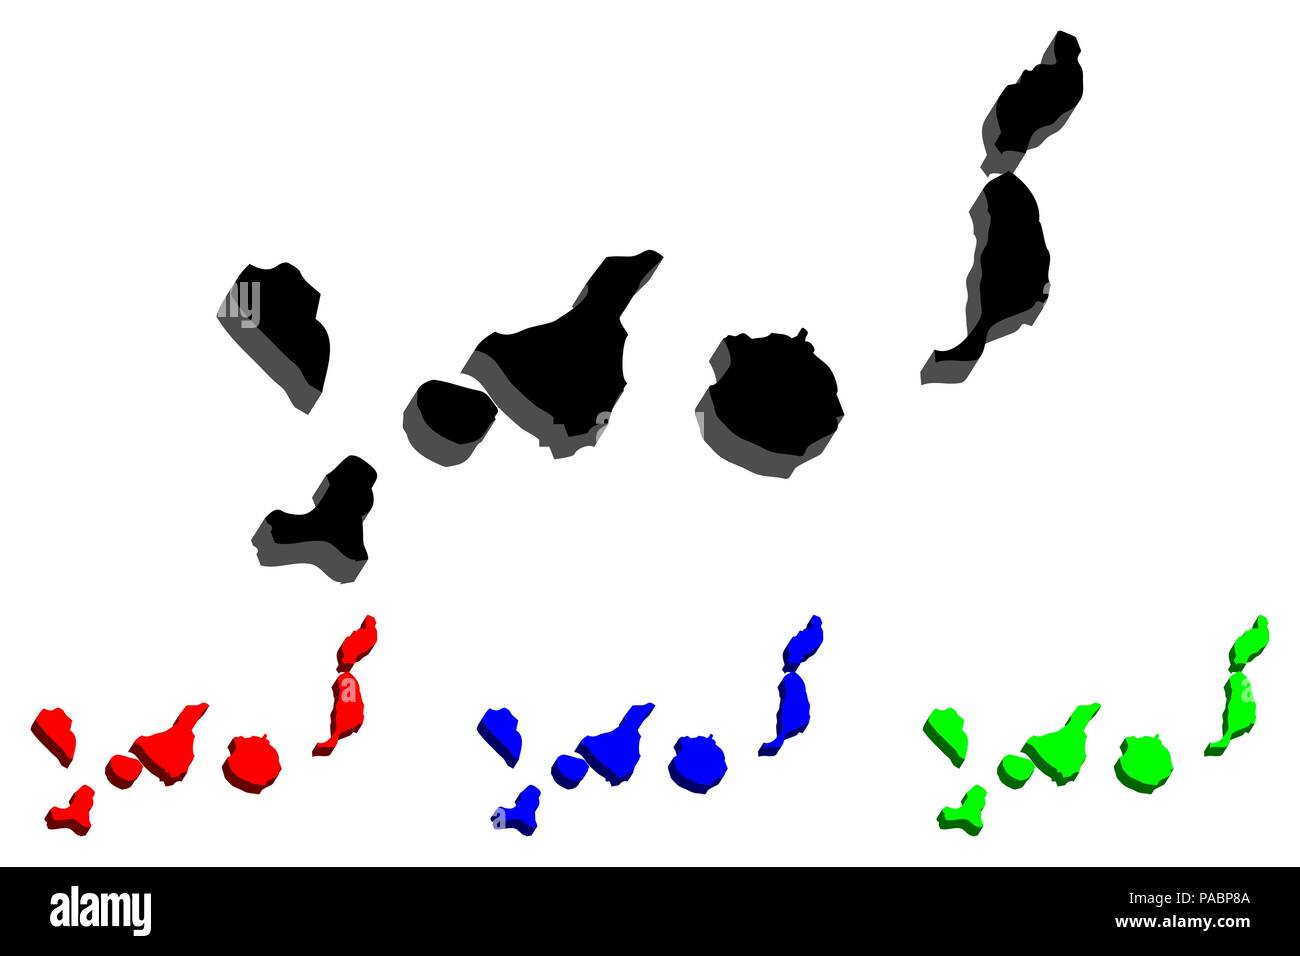 Mapa 3D de Canarias (Islas Canarias) - negro, rojo, azul y verde - ilustración vectorial Ilustración del Vector